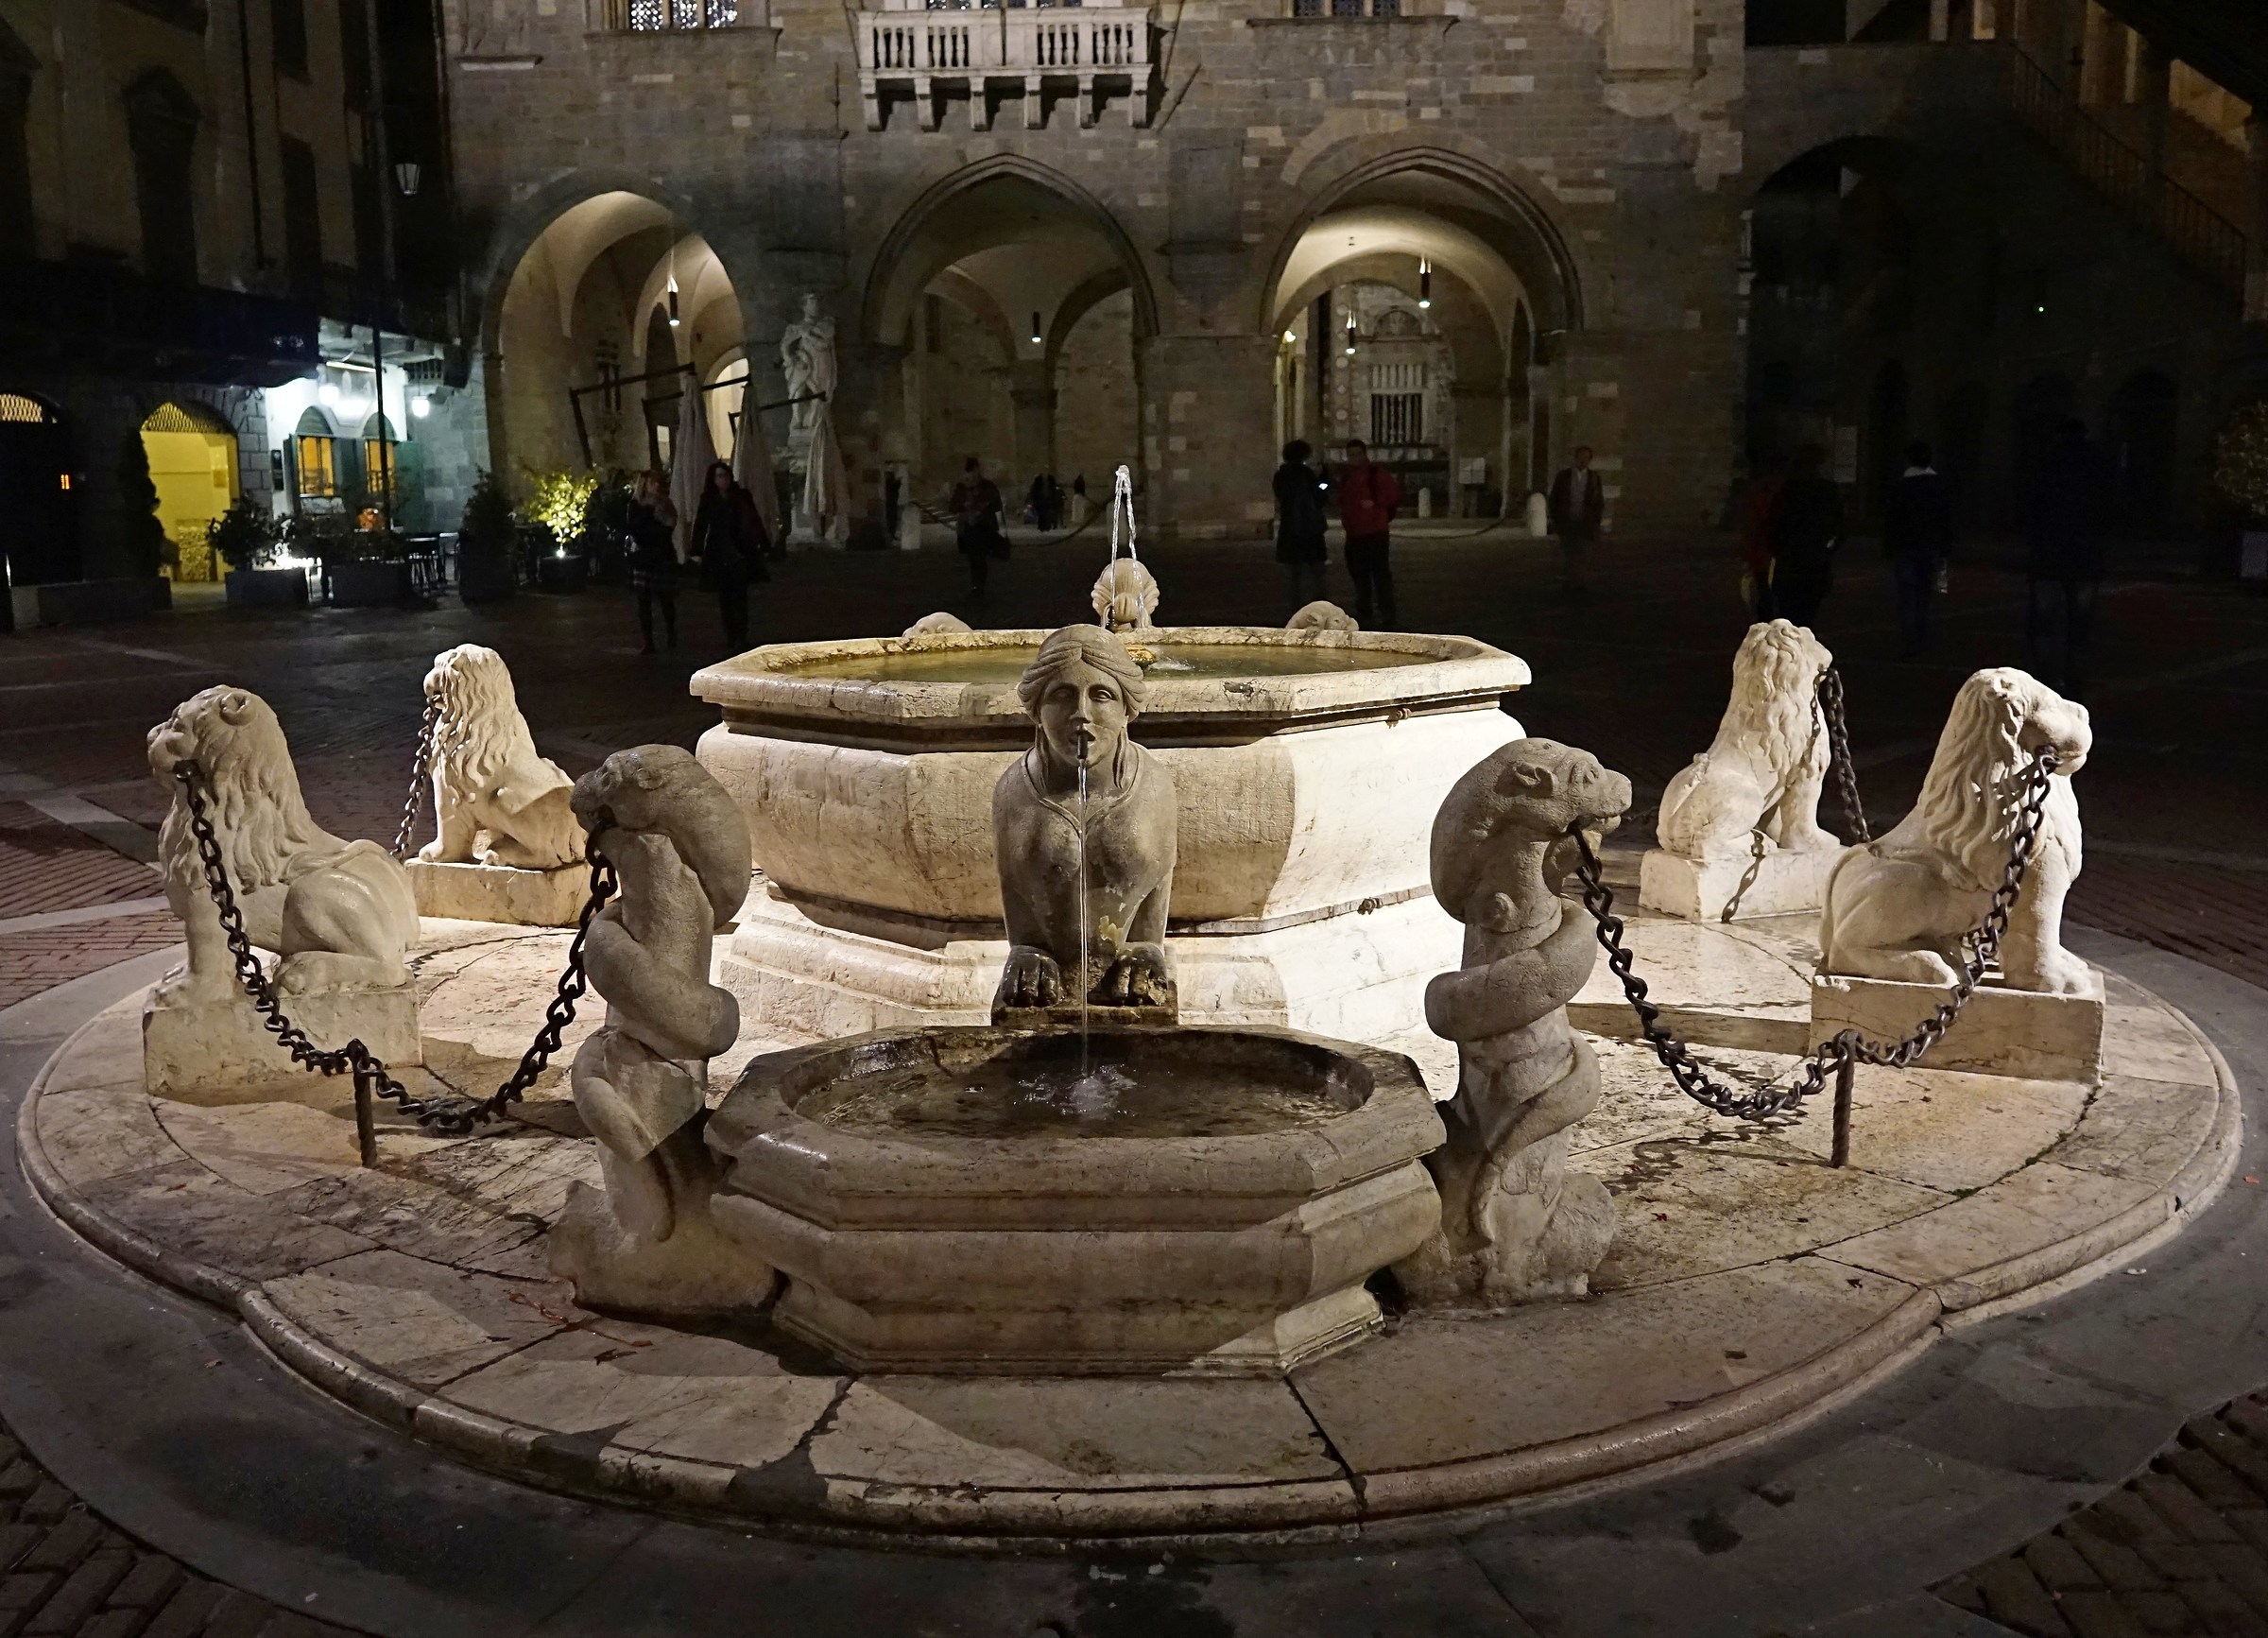 Night walk in the historic center of Bergamo Alto...